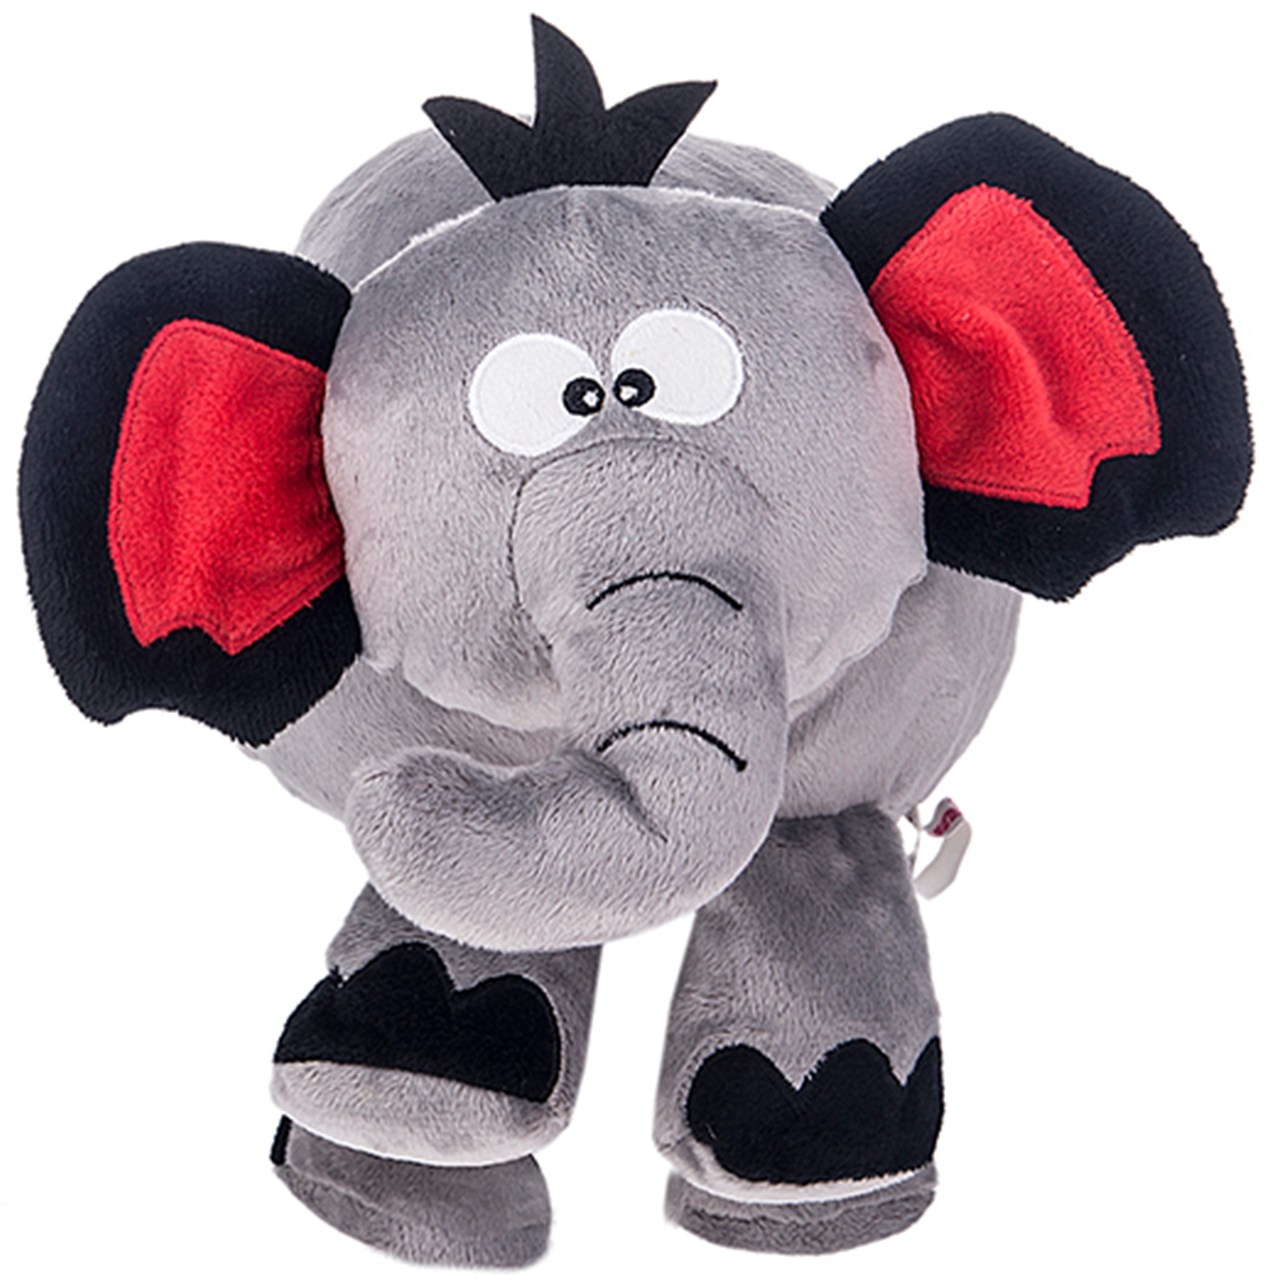 عروسک رانیک مدل Baby Elephant سایز متوسط